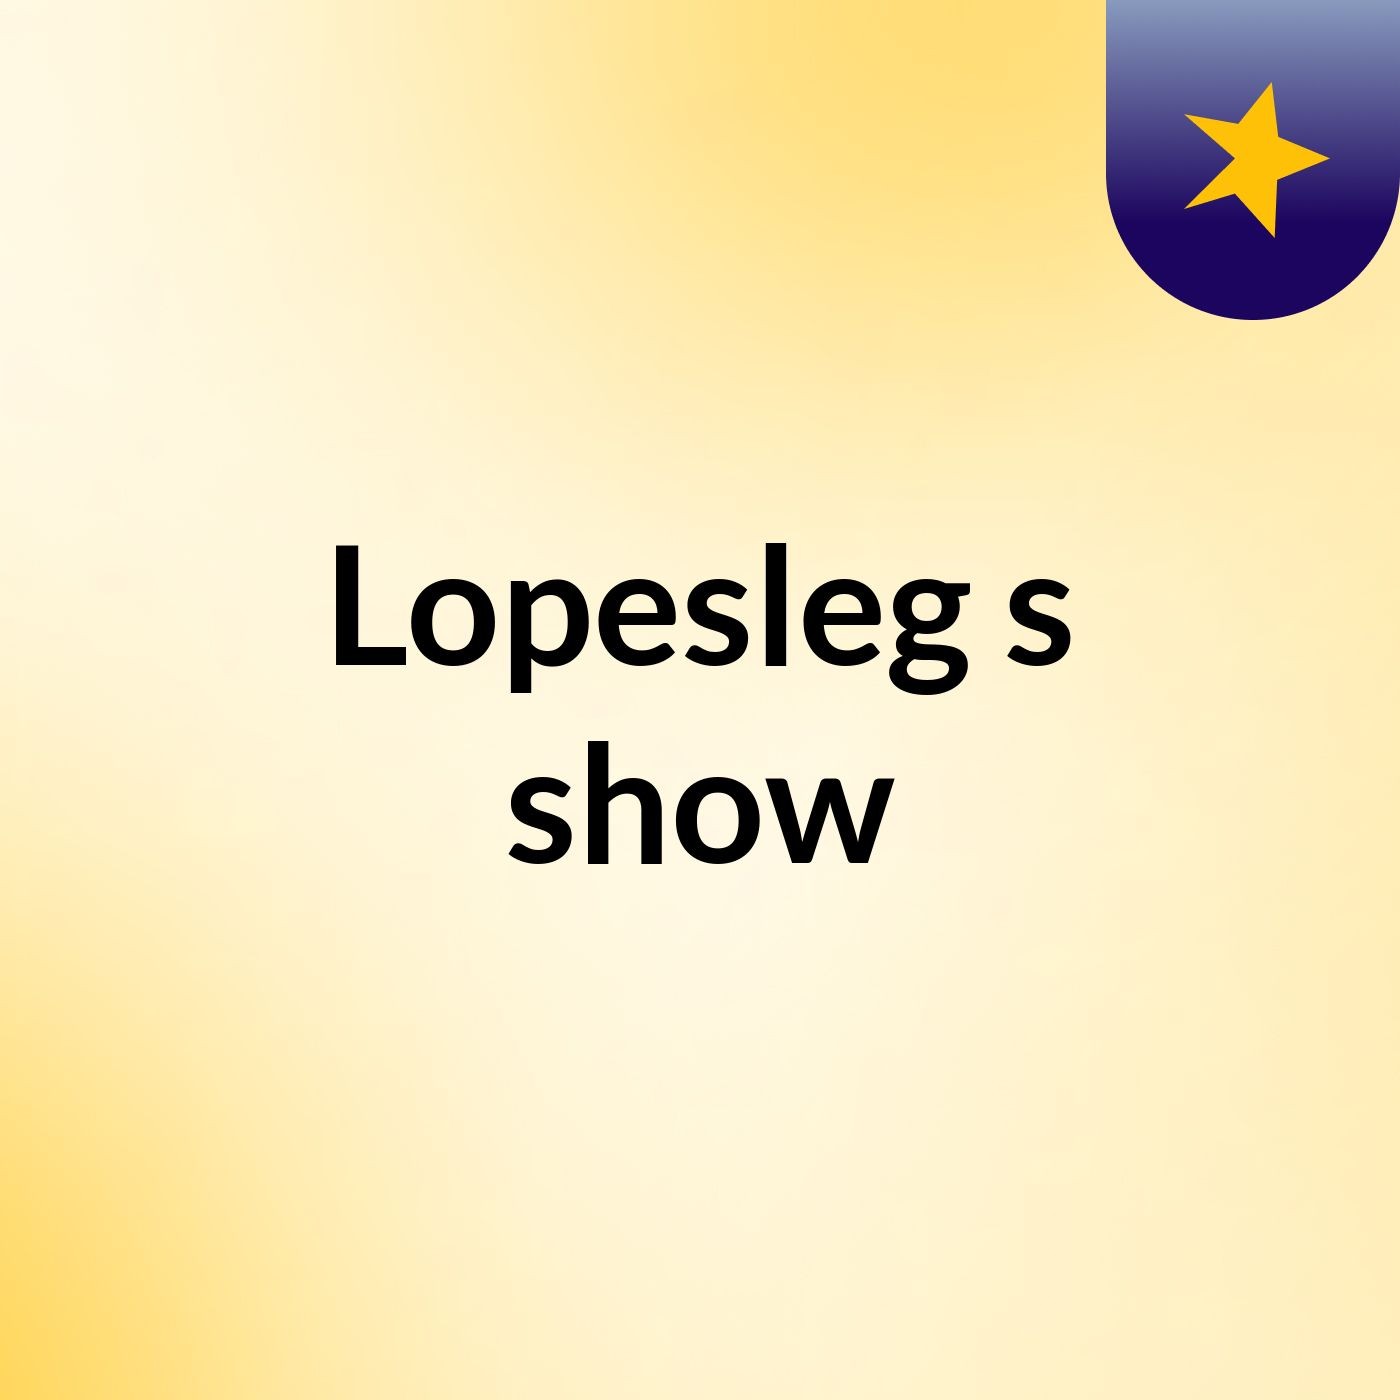 Lopesleg's show